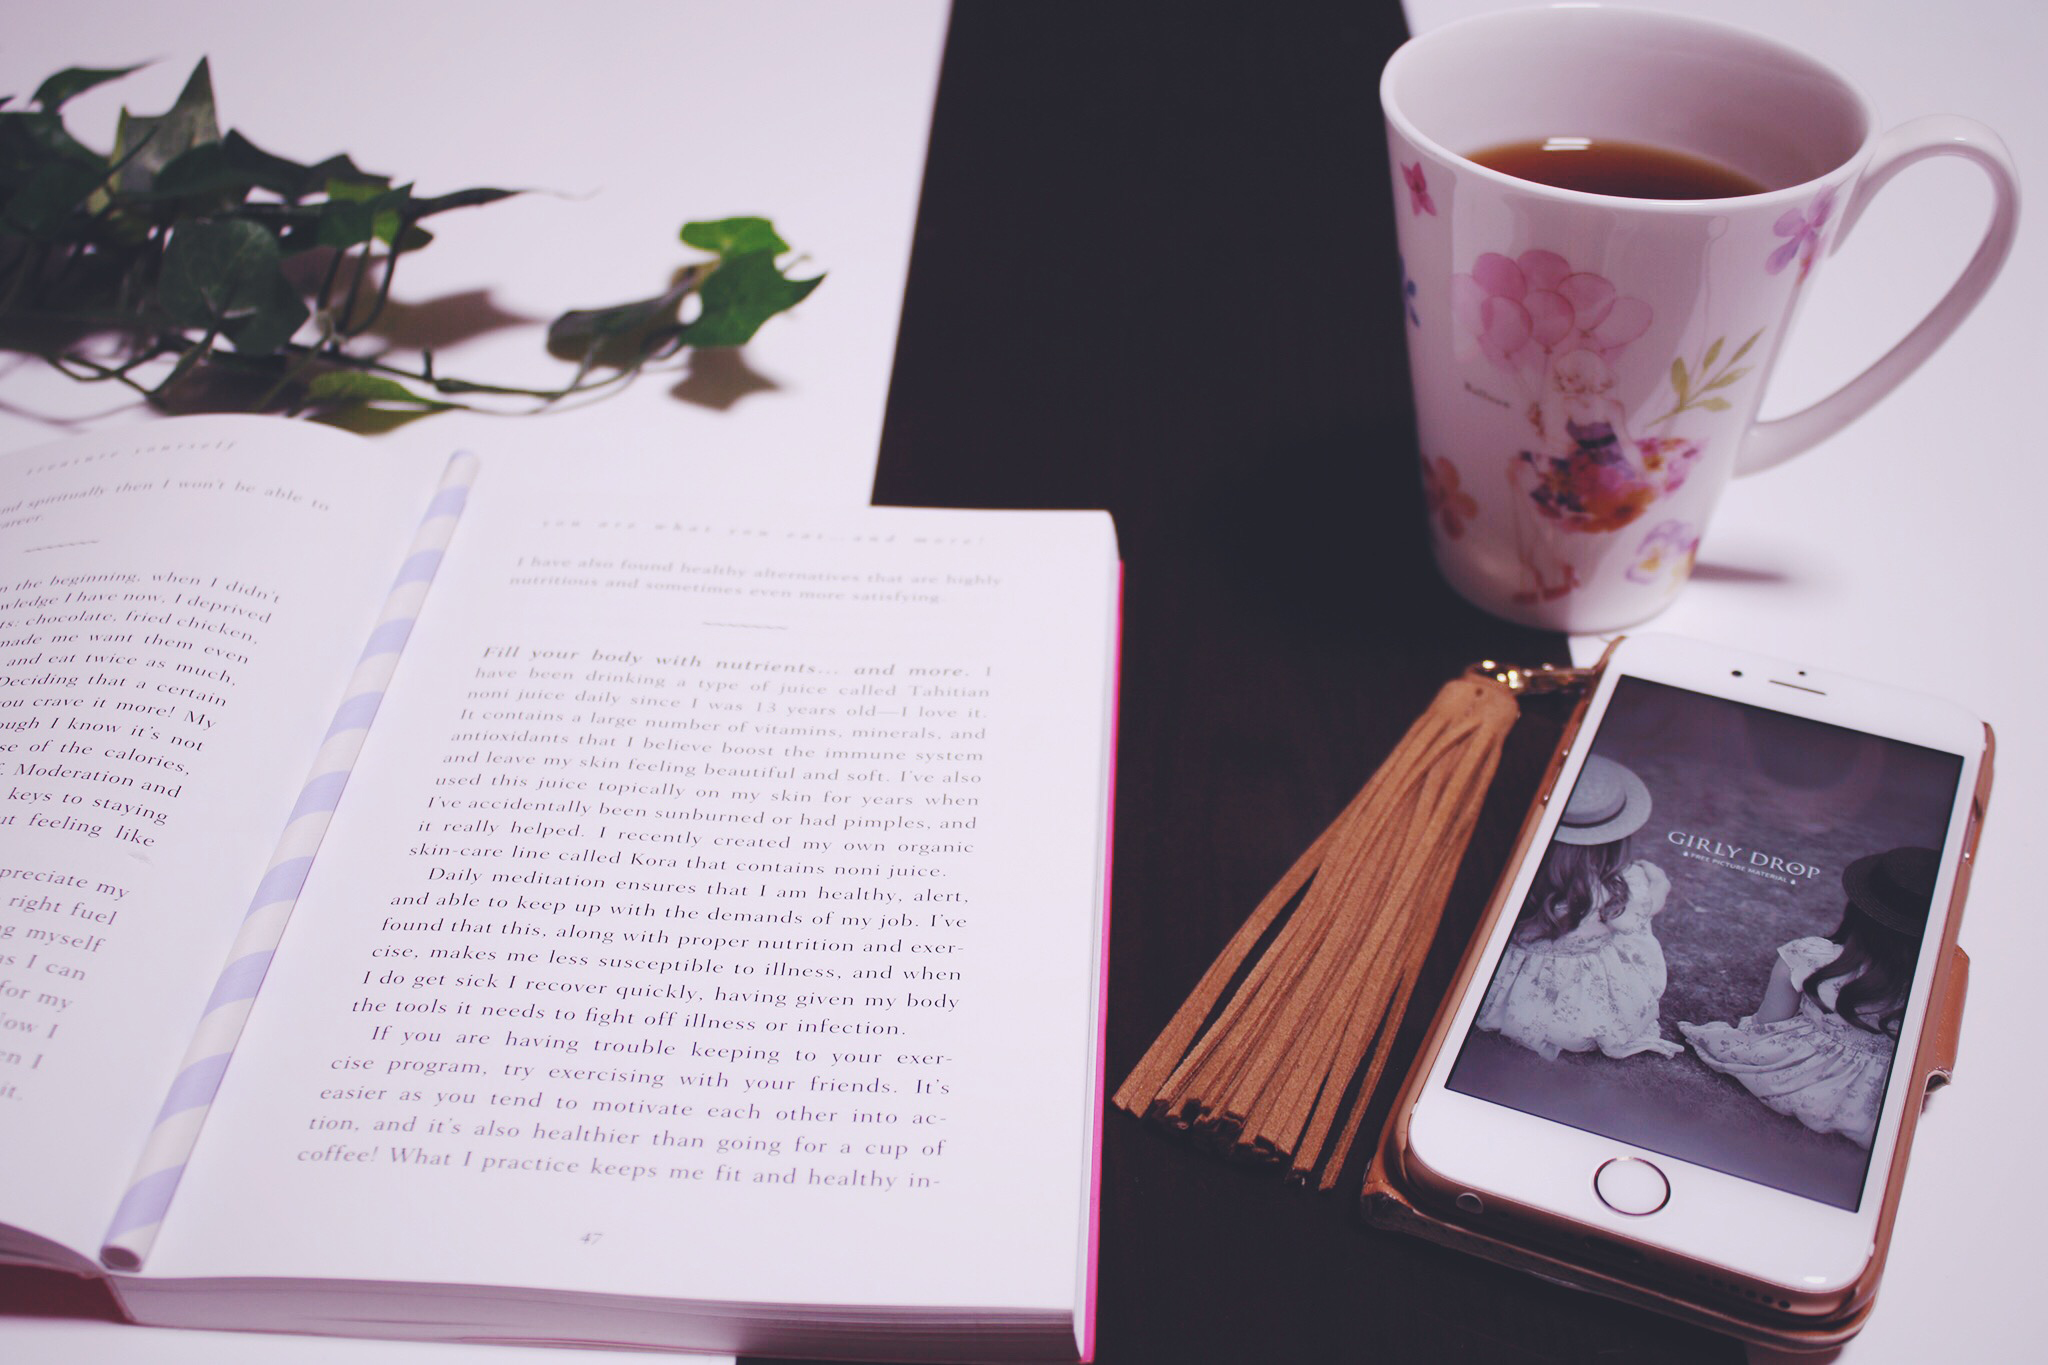 コーヒーを飲みながら読書している様子のフリー画像 おしゃれなフリー写真素材 Girly Drop